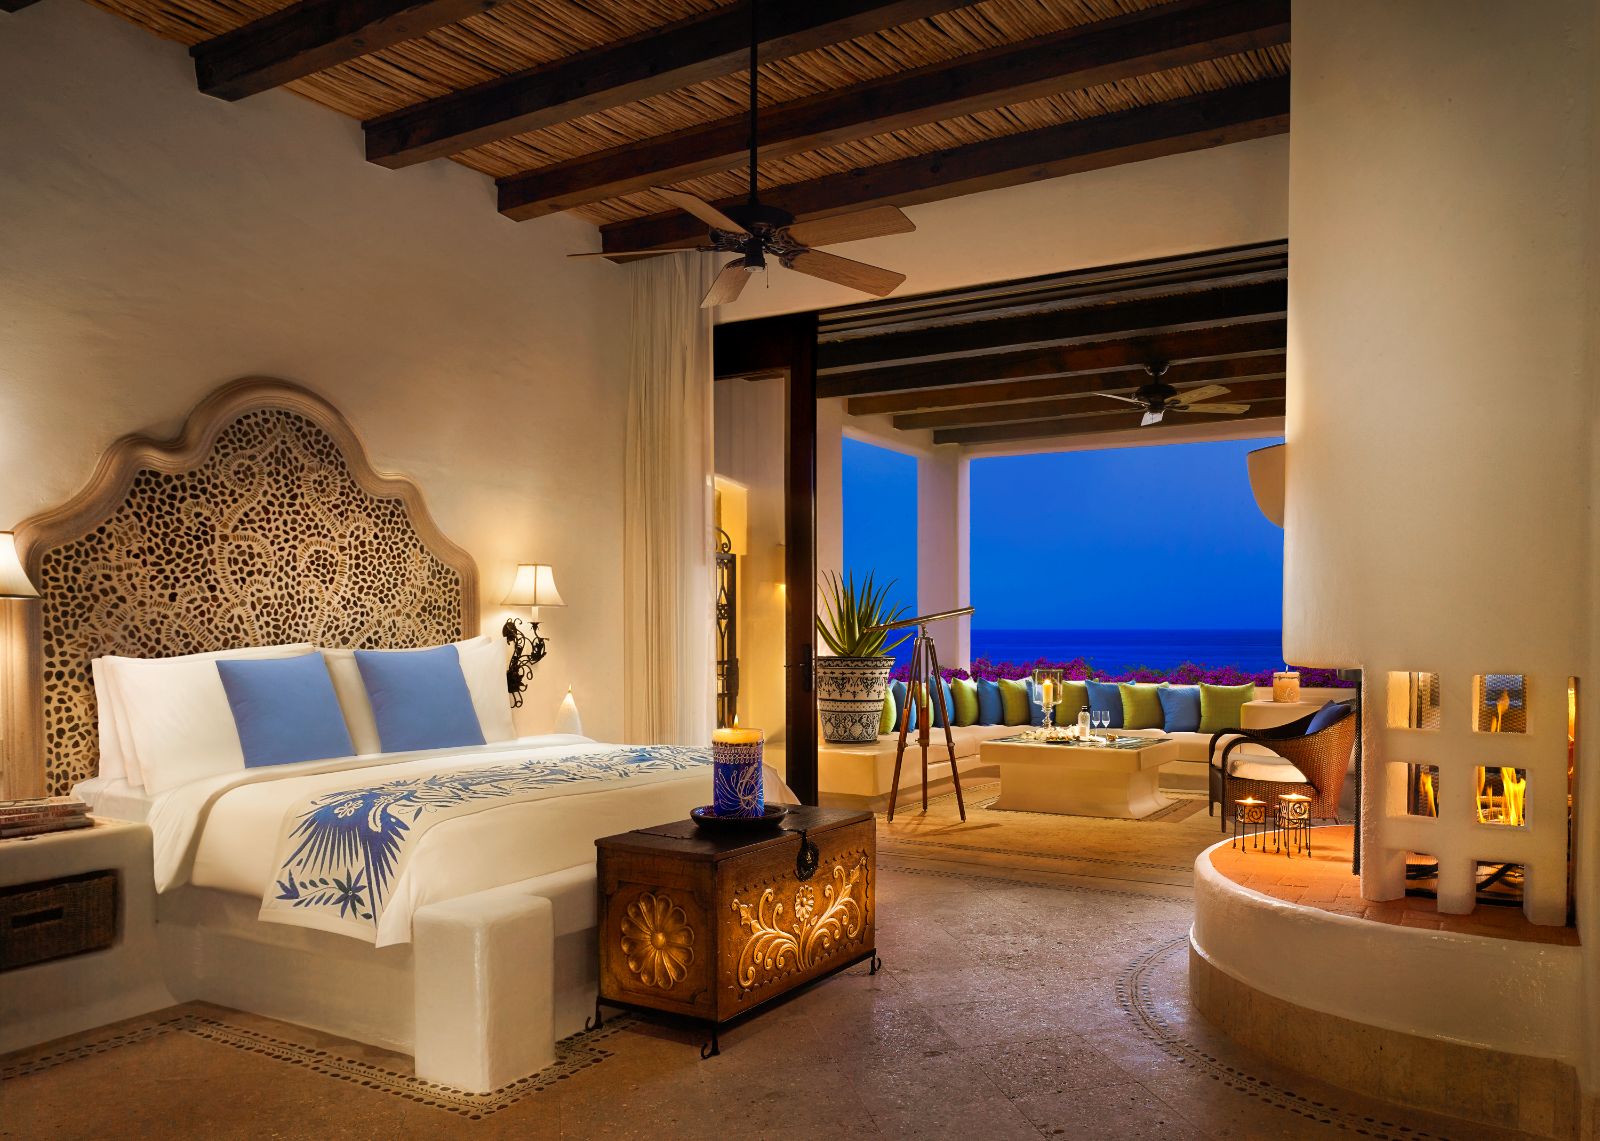 Guest suite bedroom at Rosewood Las Ventanas Al Paraiso in Mexico's Los Cabos